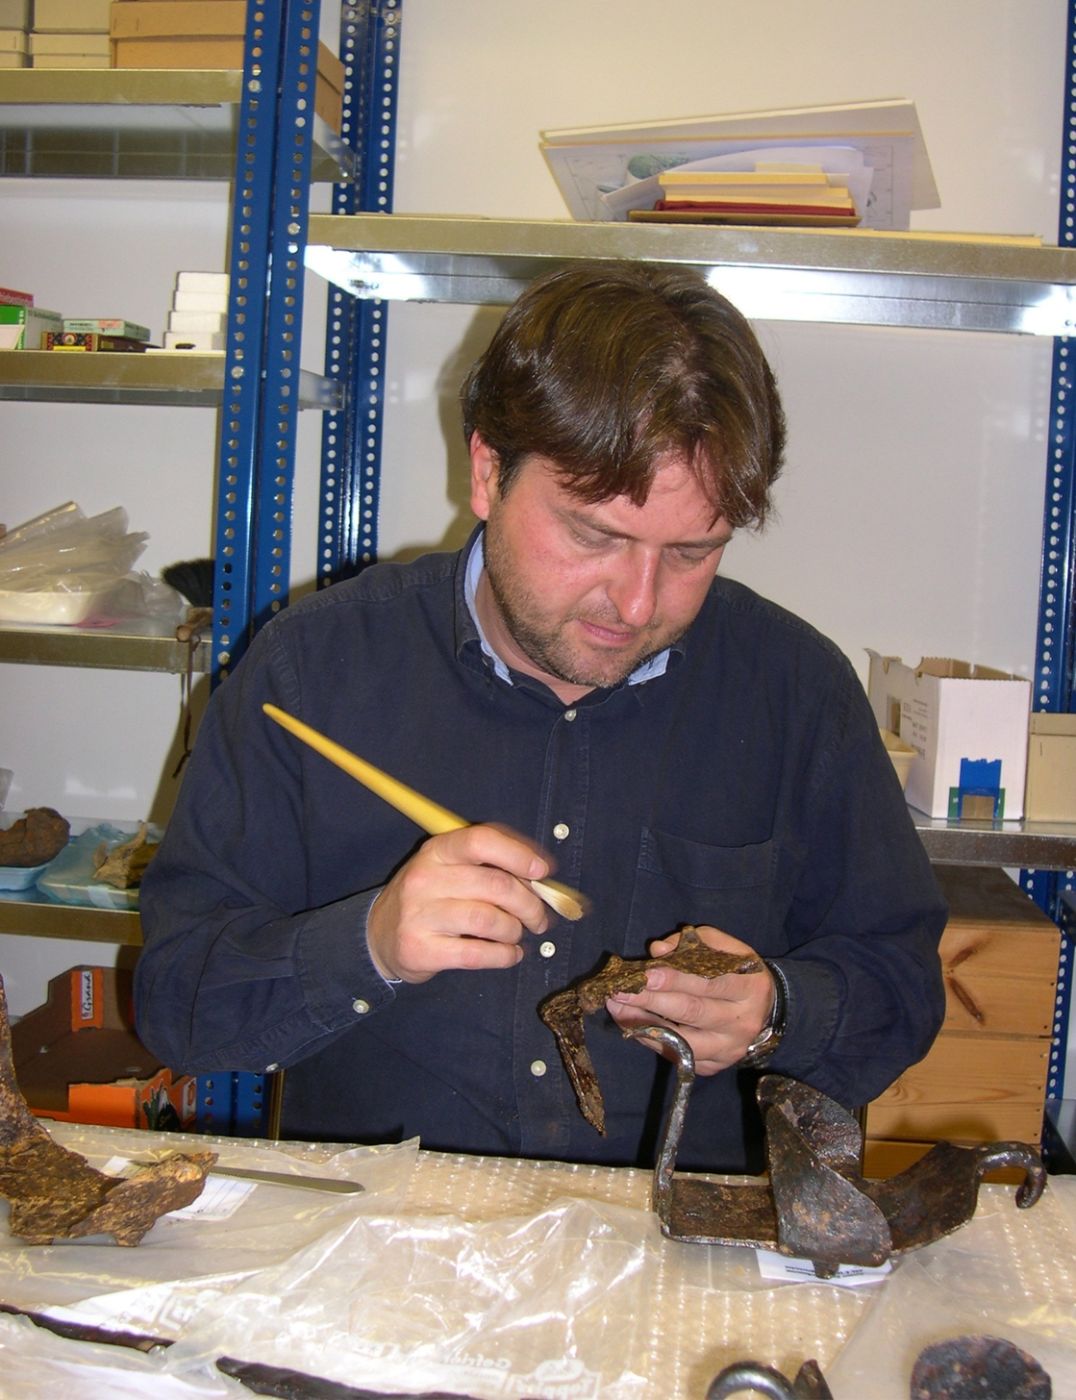 Ein Mann arbeitet in einem Labor mit einem Pinsel an der Restaurierung und Konservierung von antiken Sandalen